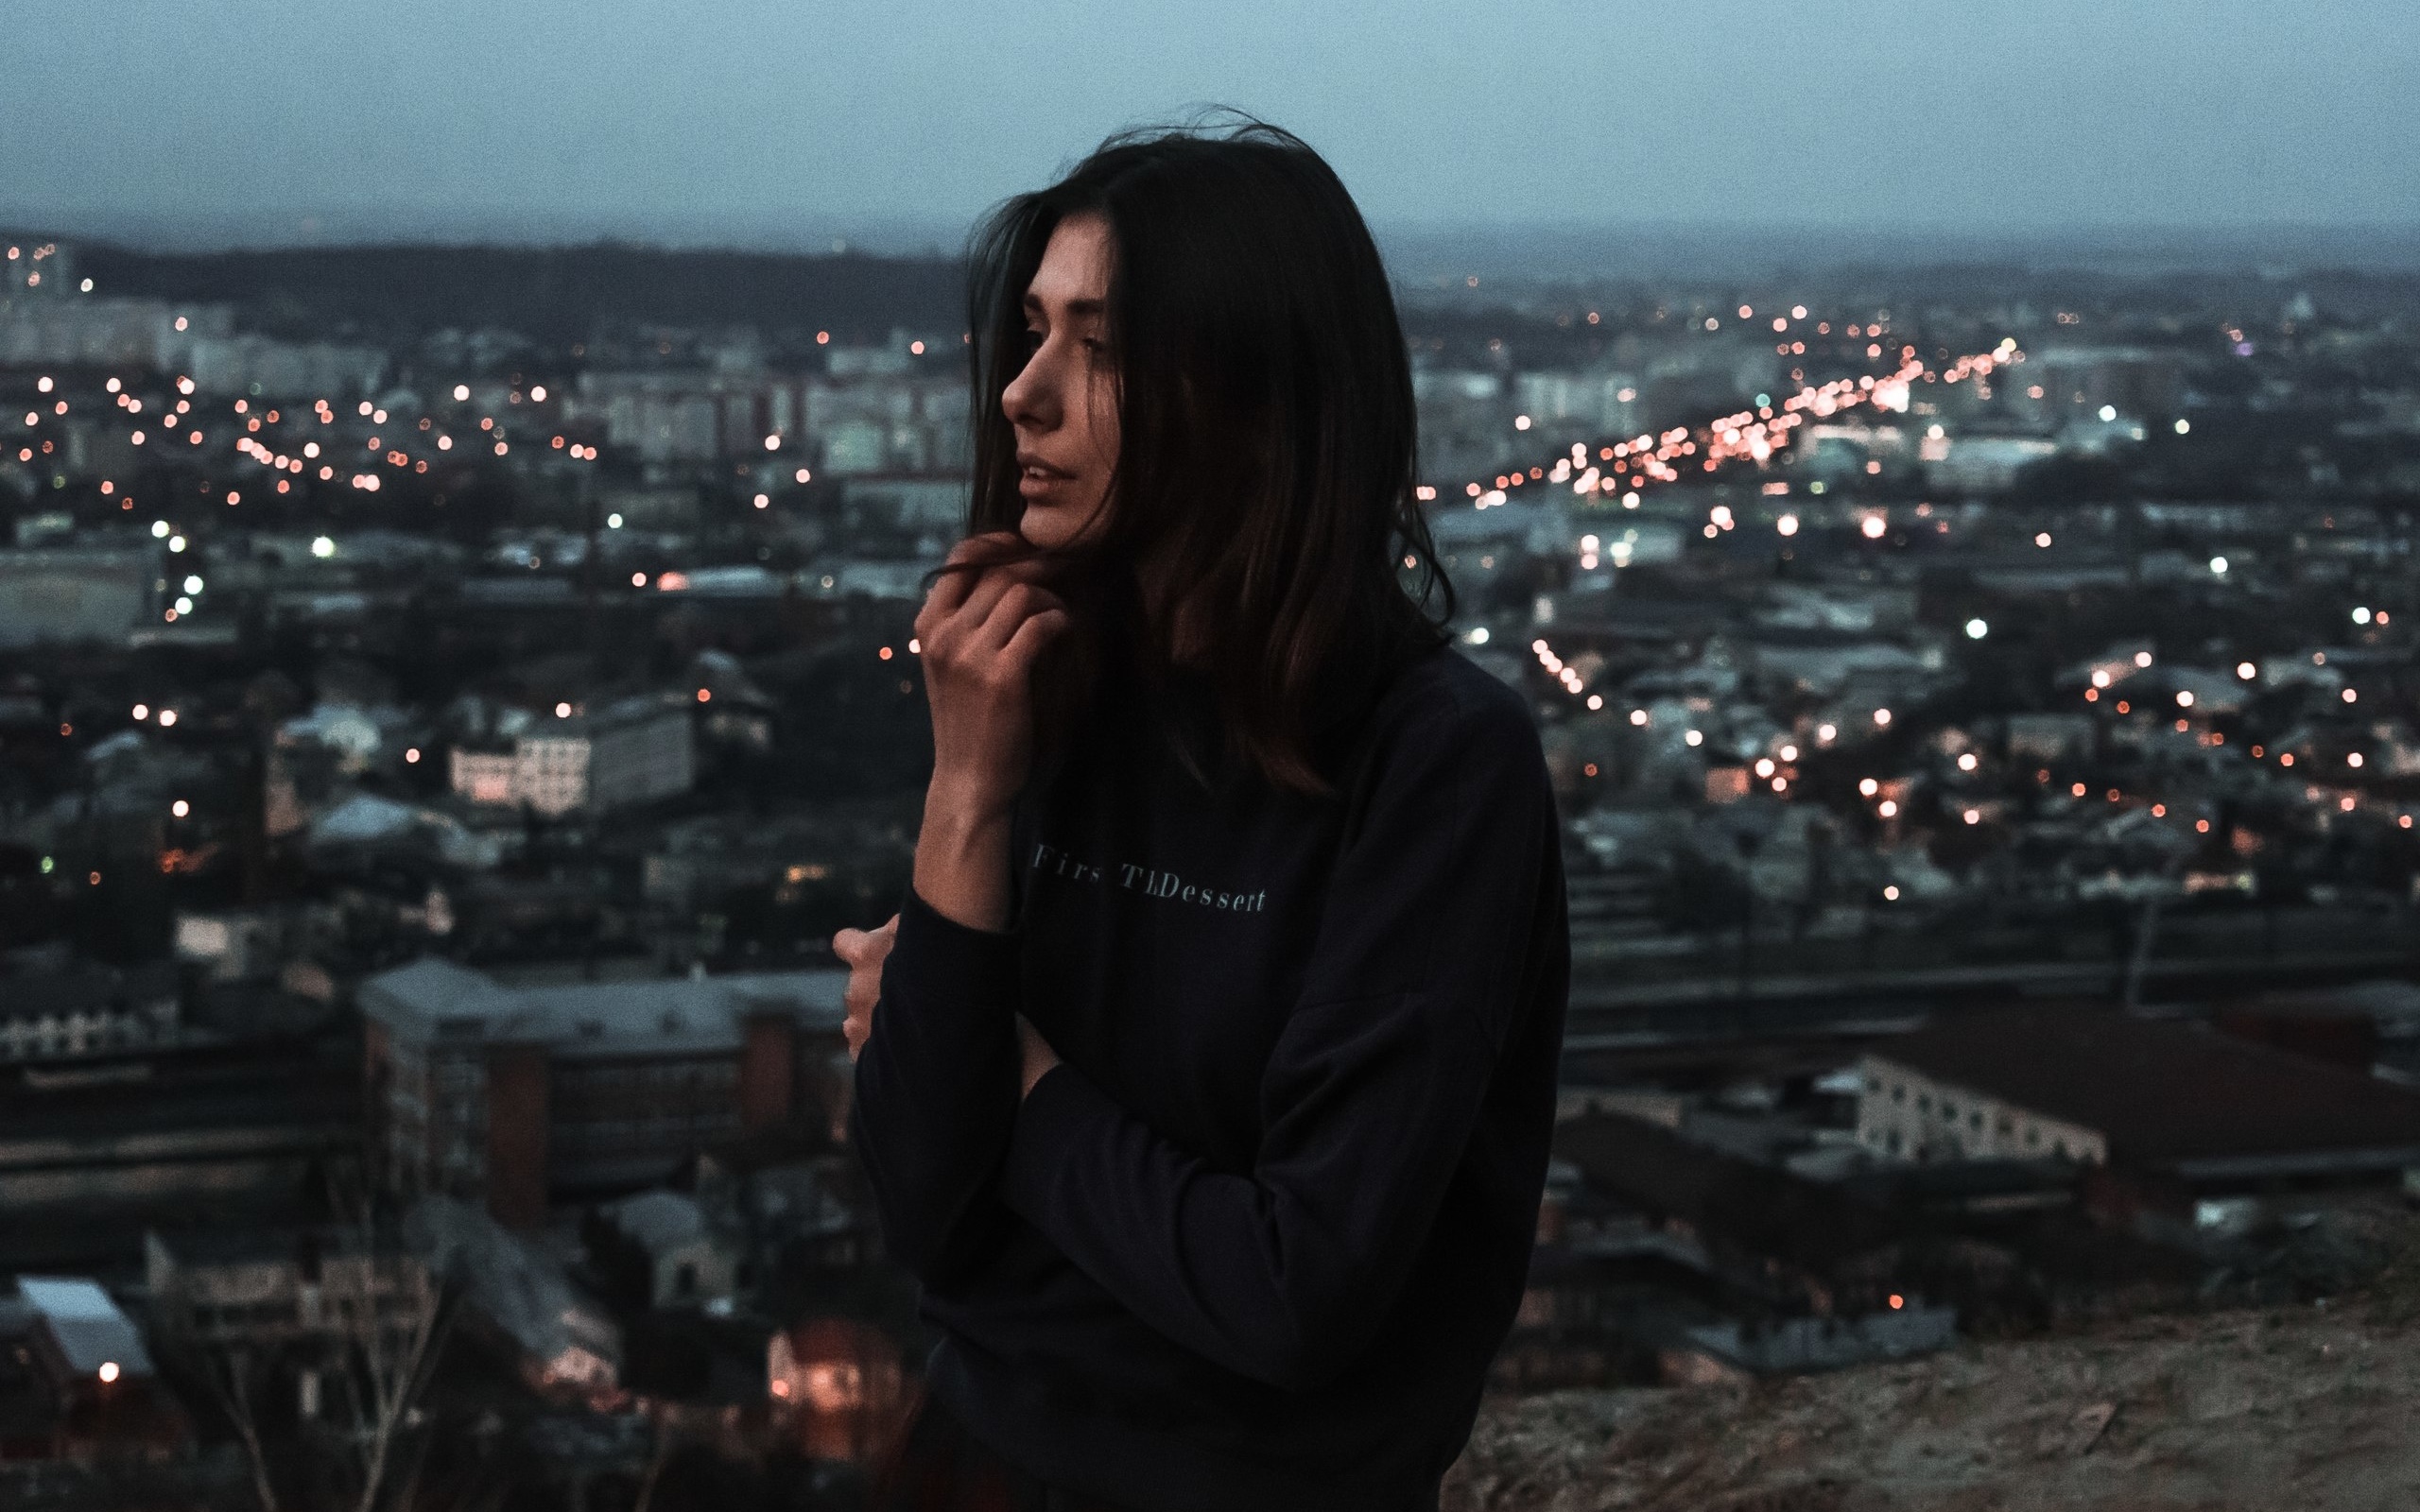 Фото девушки на фоне ночного города